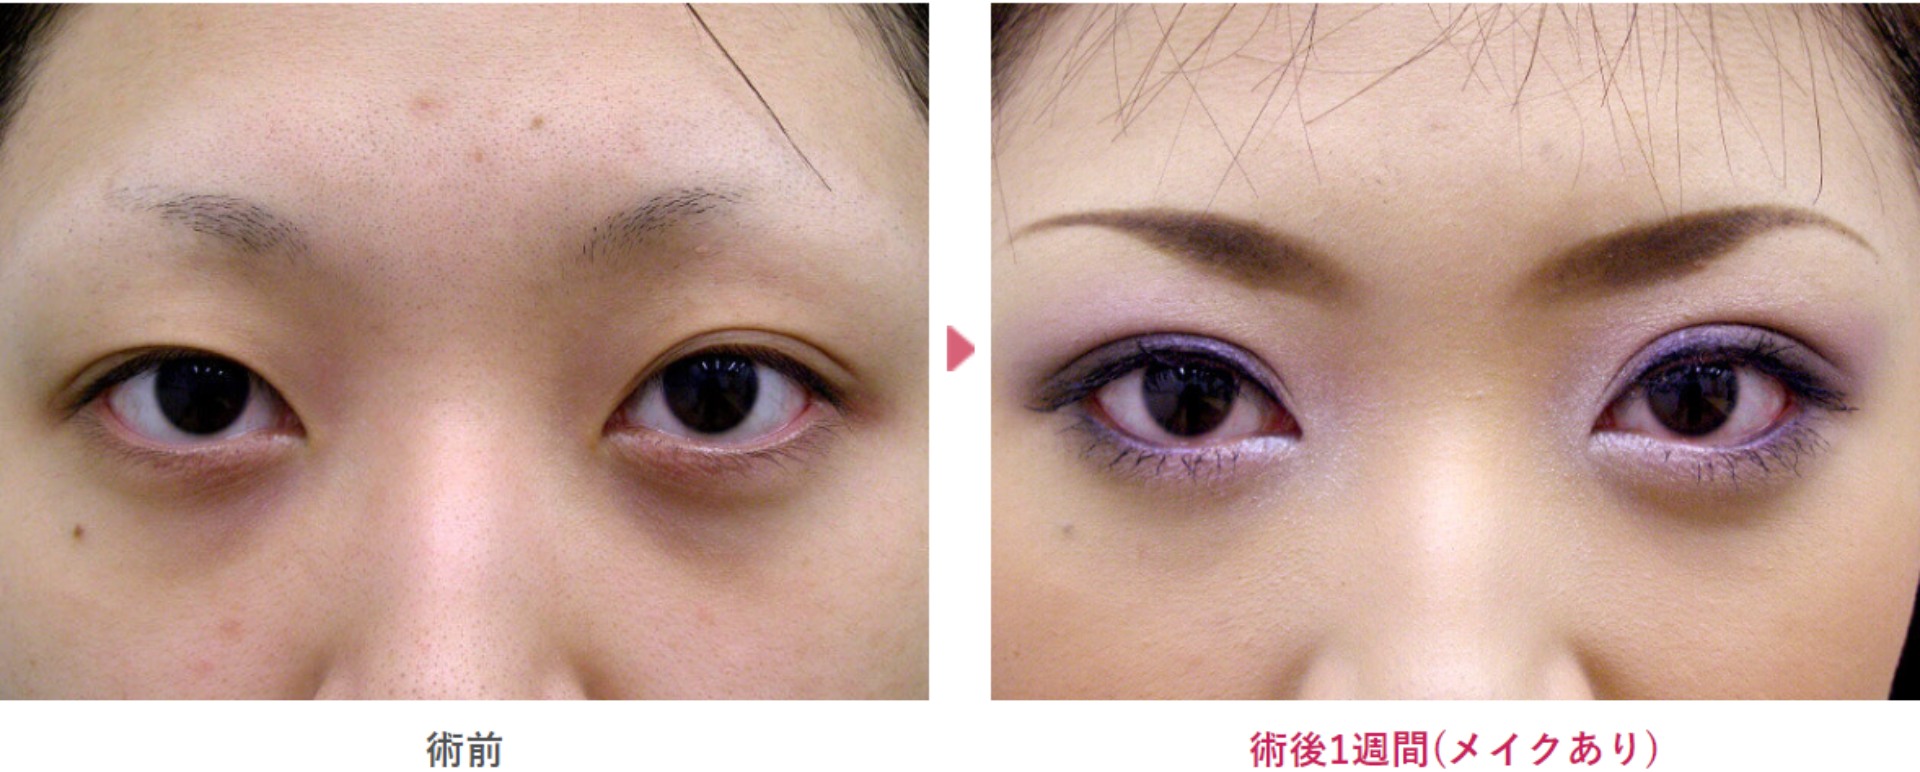 他院修正の二重埋没治療の術前と術後1週間（メイクあり）の見た目の変化を表す症例写真